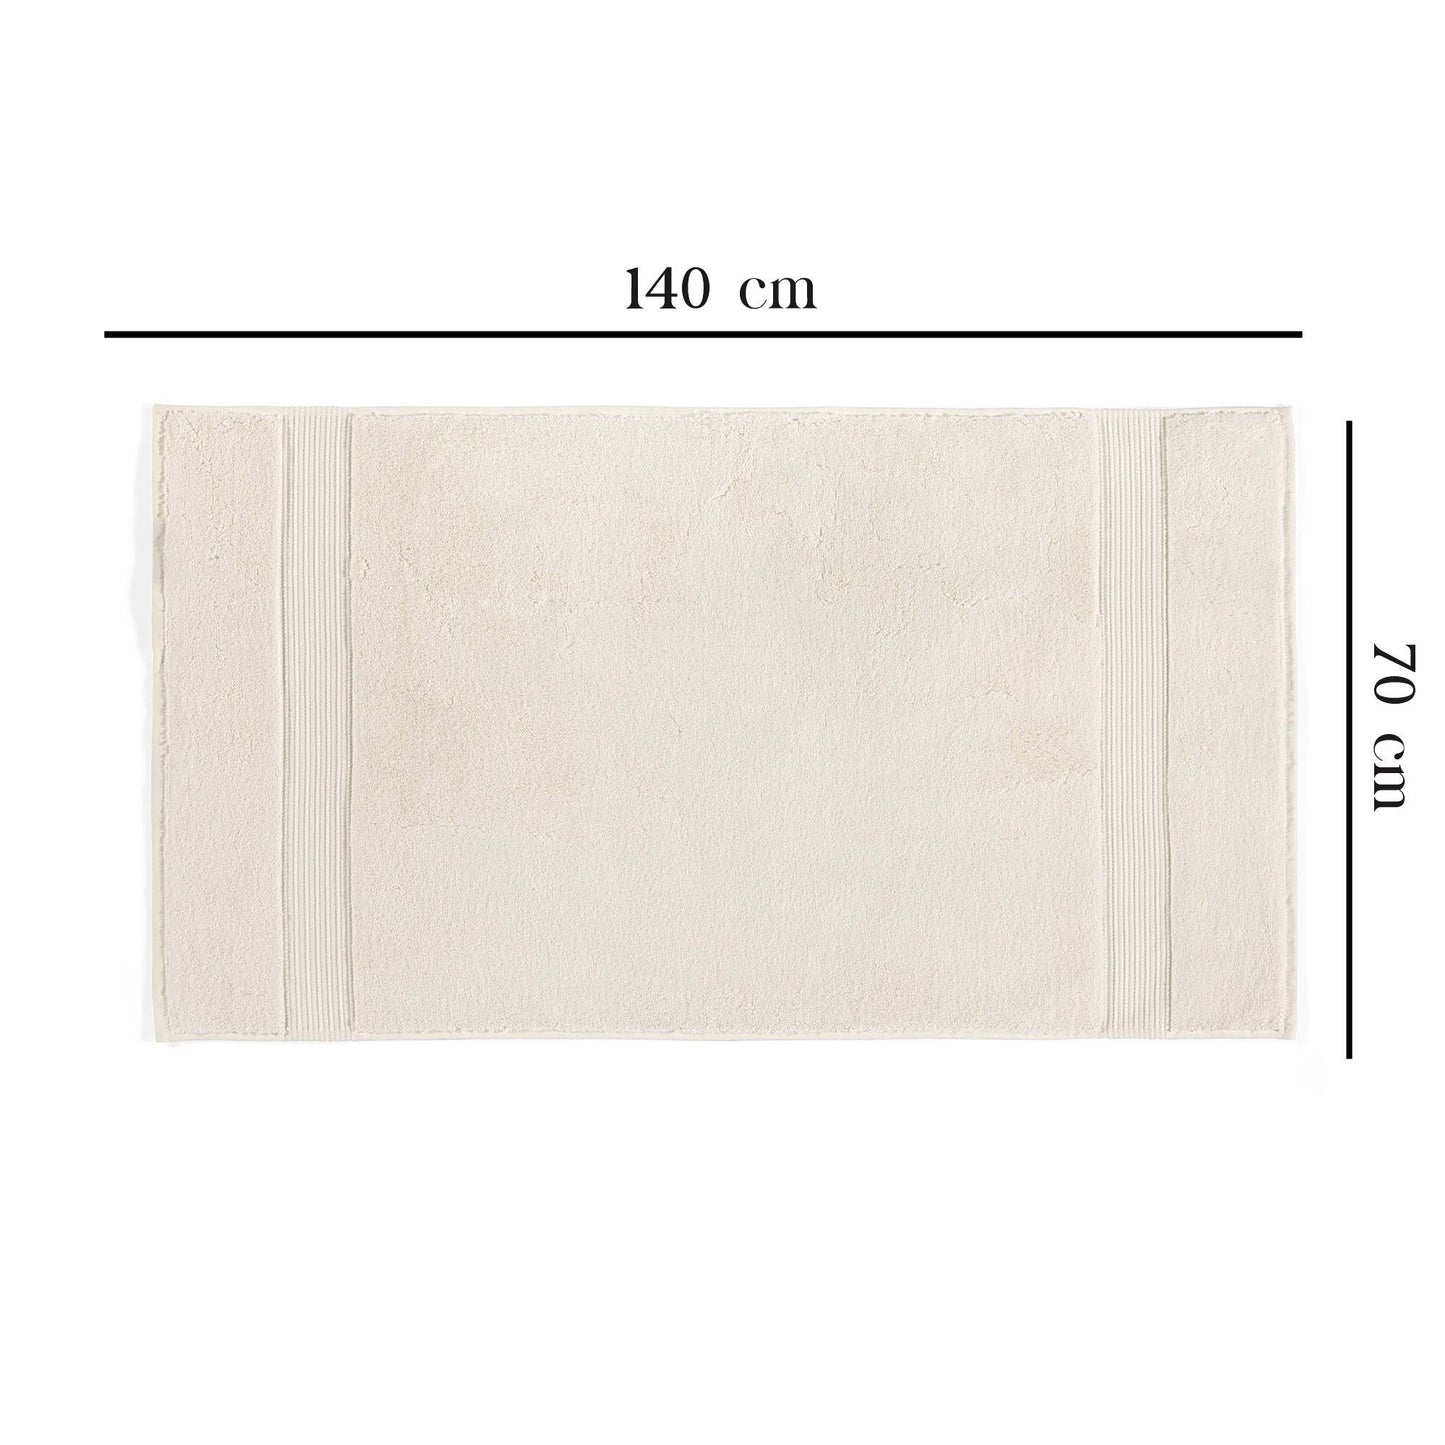 Håndklæde -  Chicago Bath (70 x 140), Cream